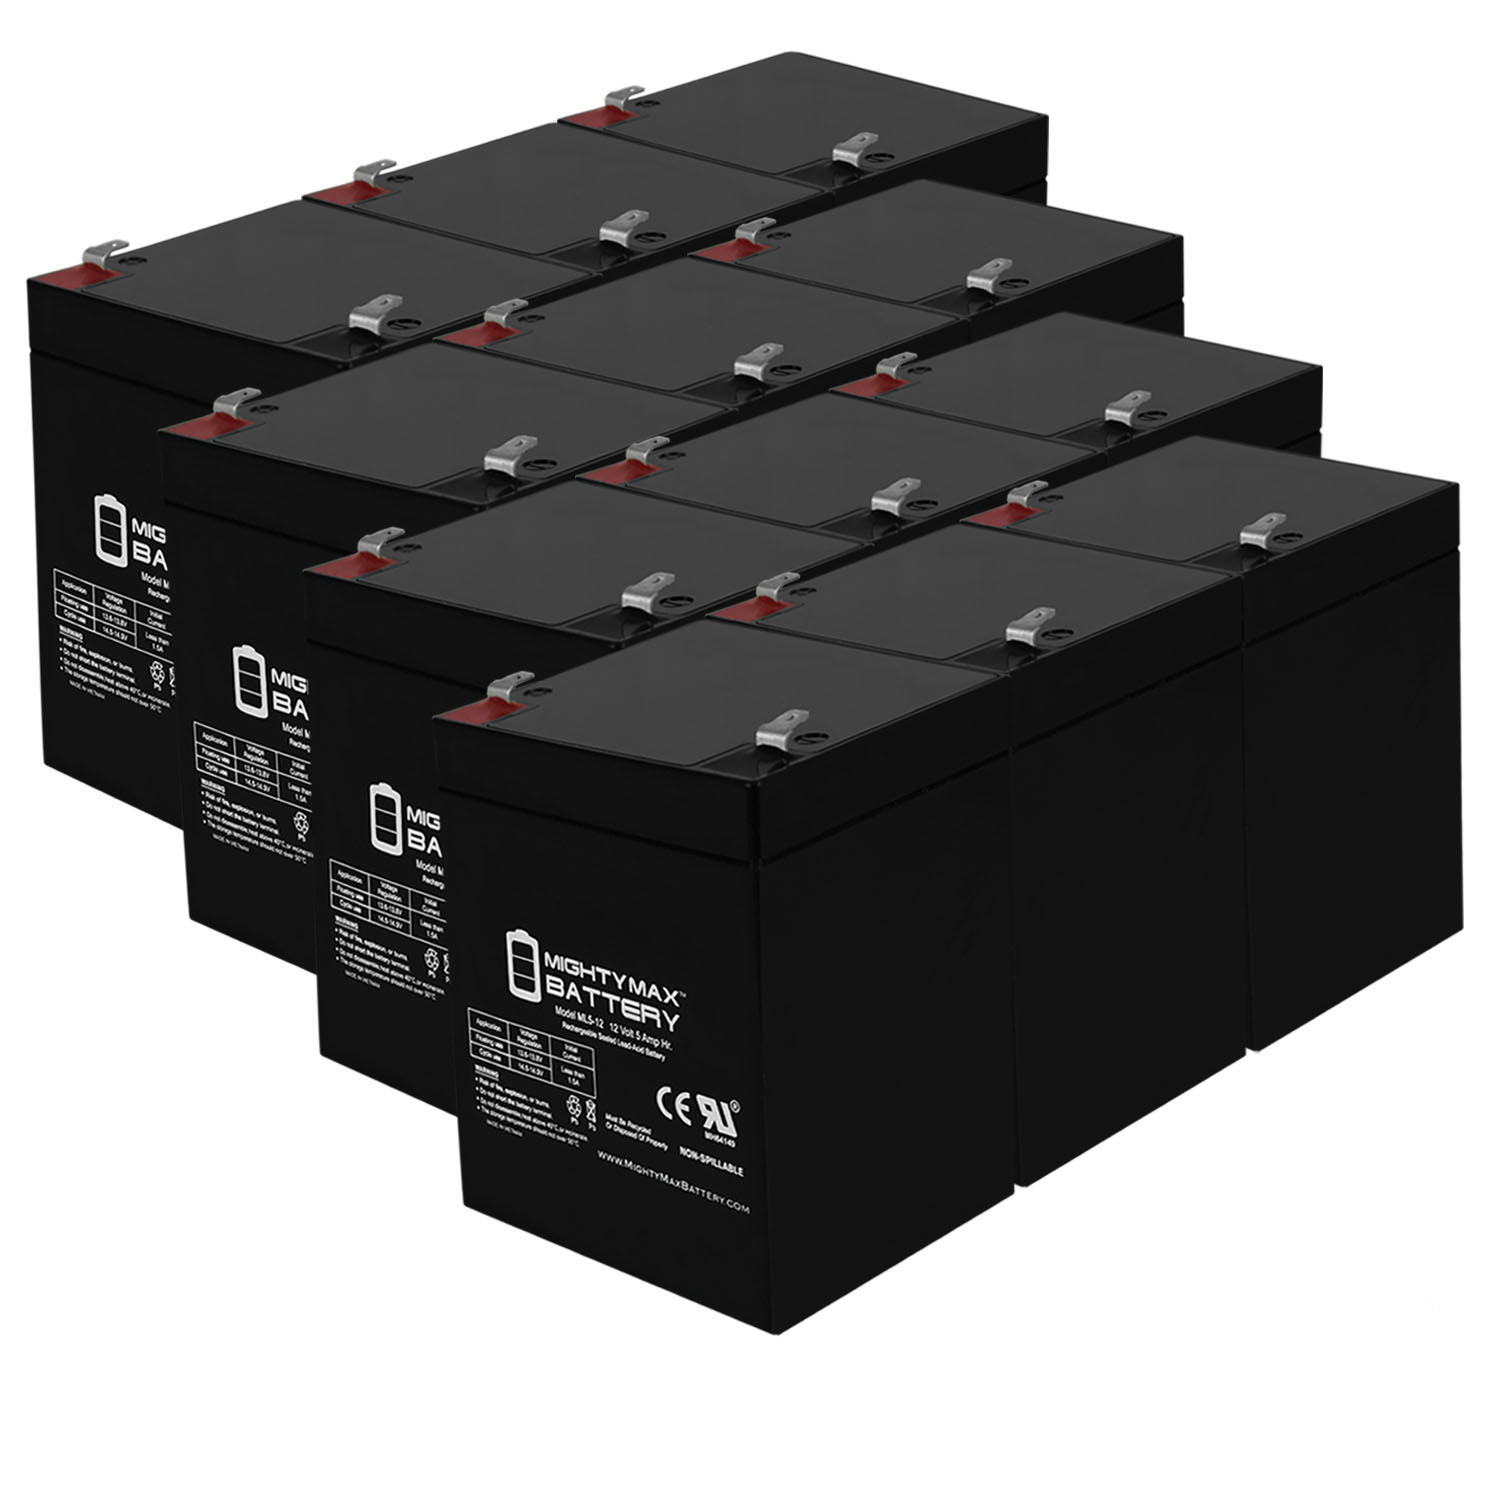 12V 5AH SLA Replacement Battery for Diamec DM12-4.2 - 12 Pack